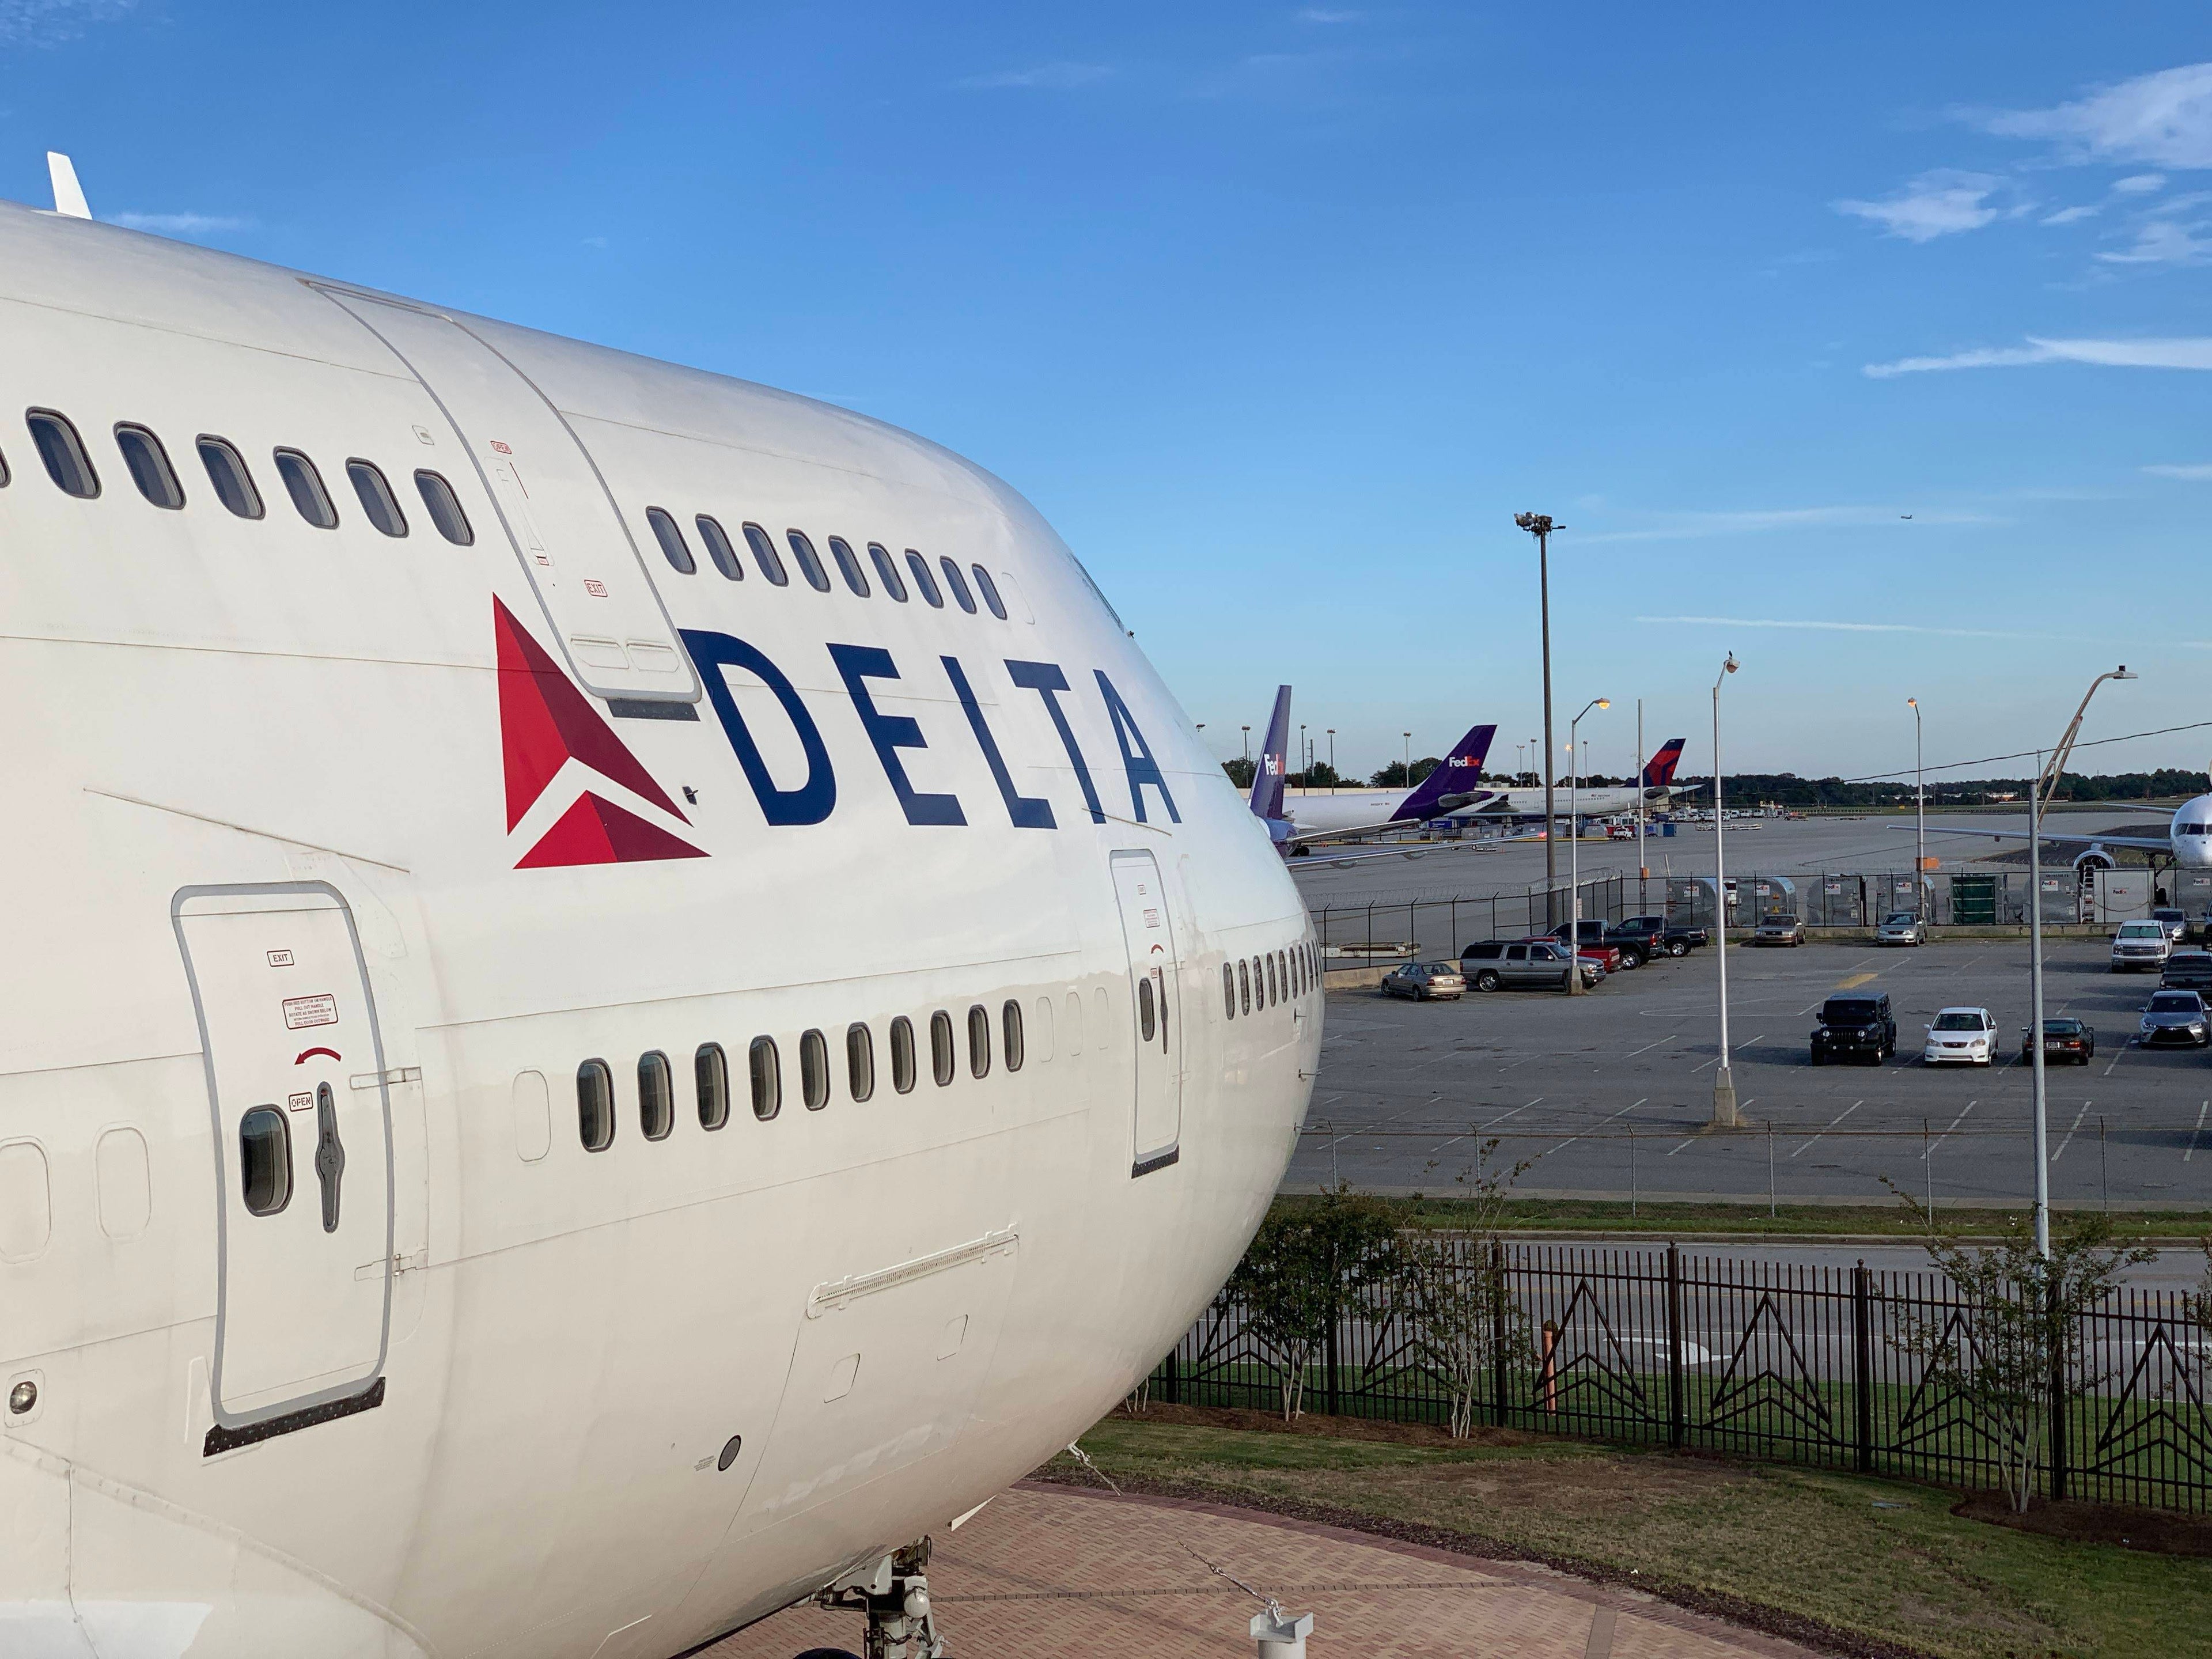 Delta Flight Musem - Boeing 747-400 peering over ATL Airport